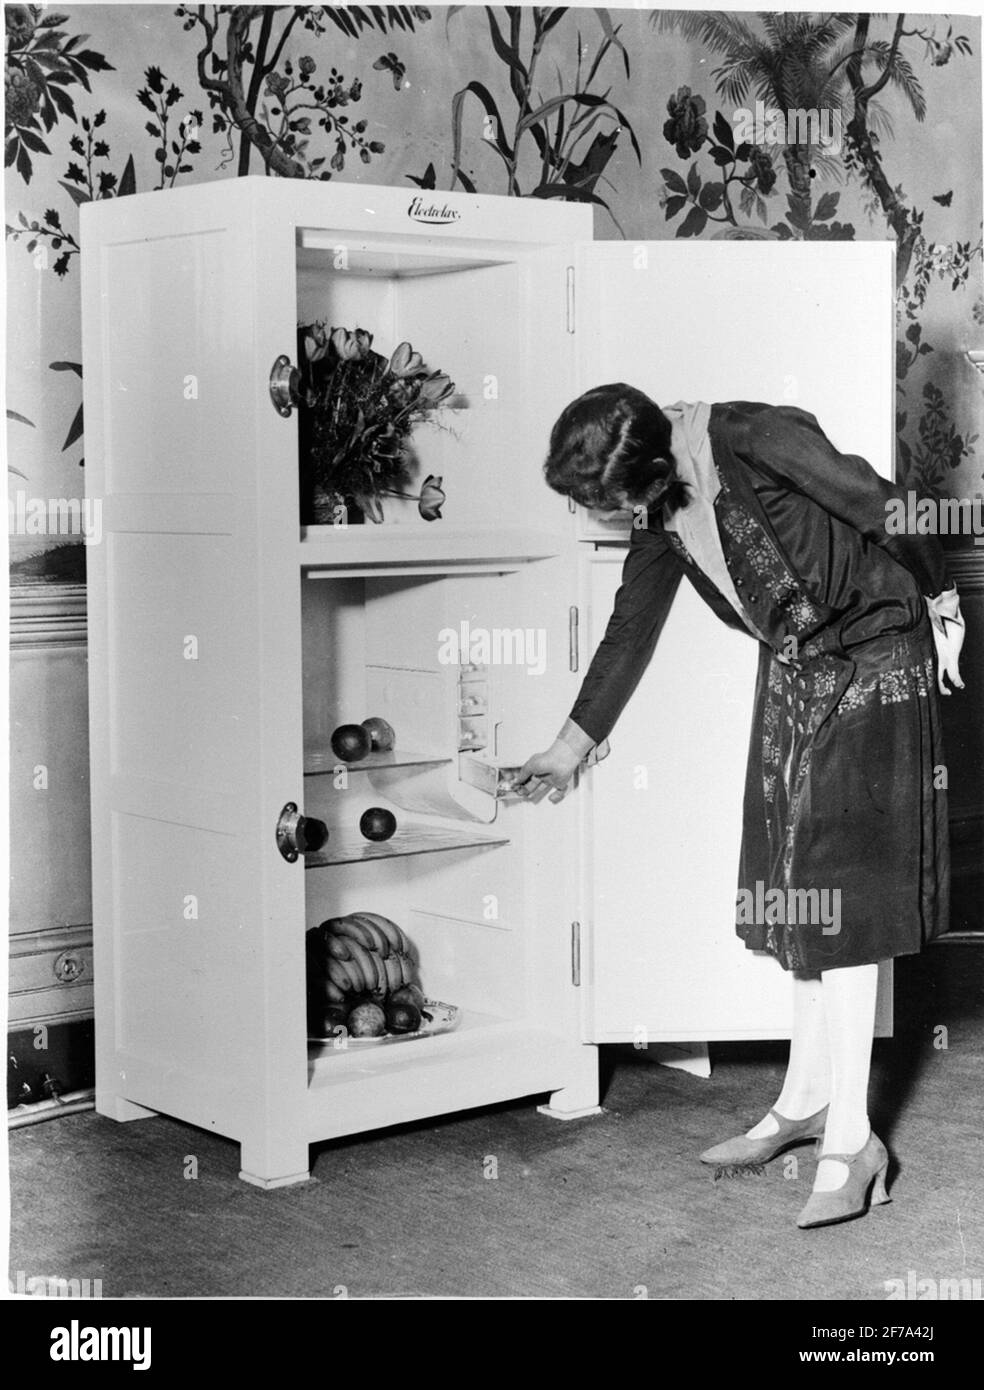 Vieux frigo Banque d'images noir et blanc - Alamy